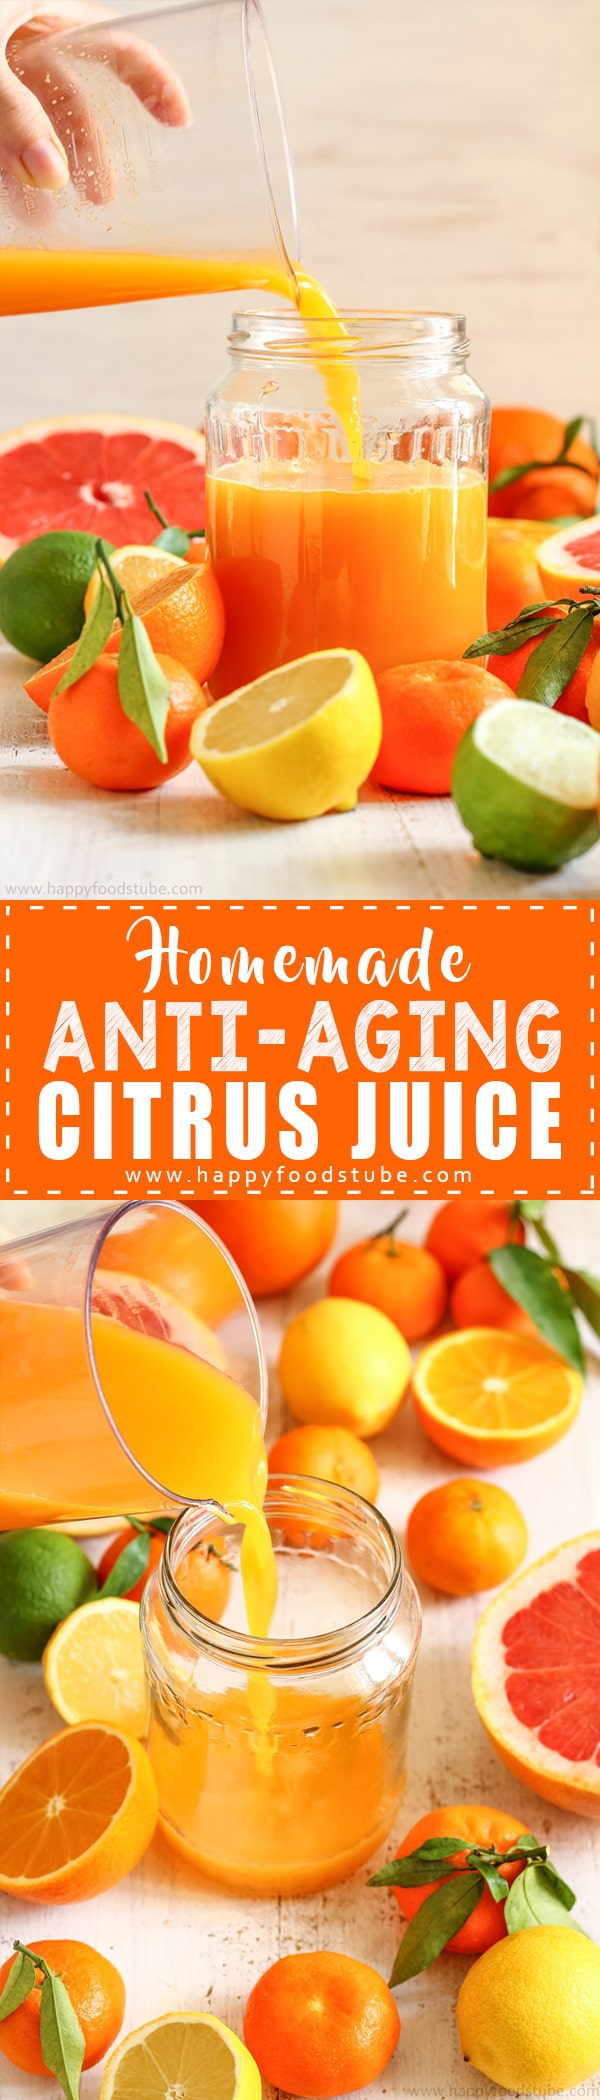 Homemade-Anti-Aging-Citrus-Juice-Recipe